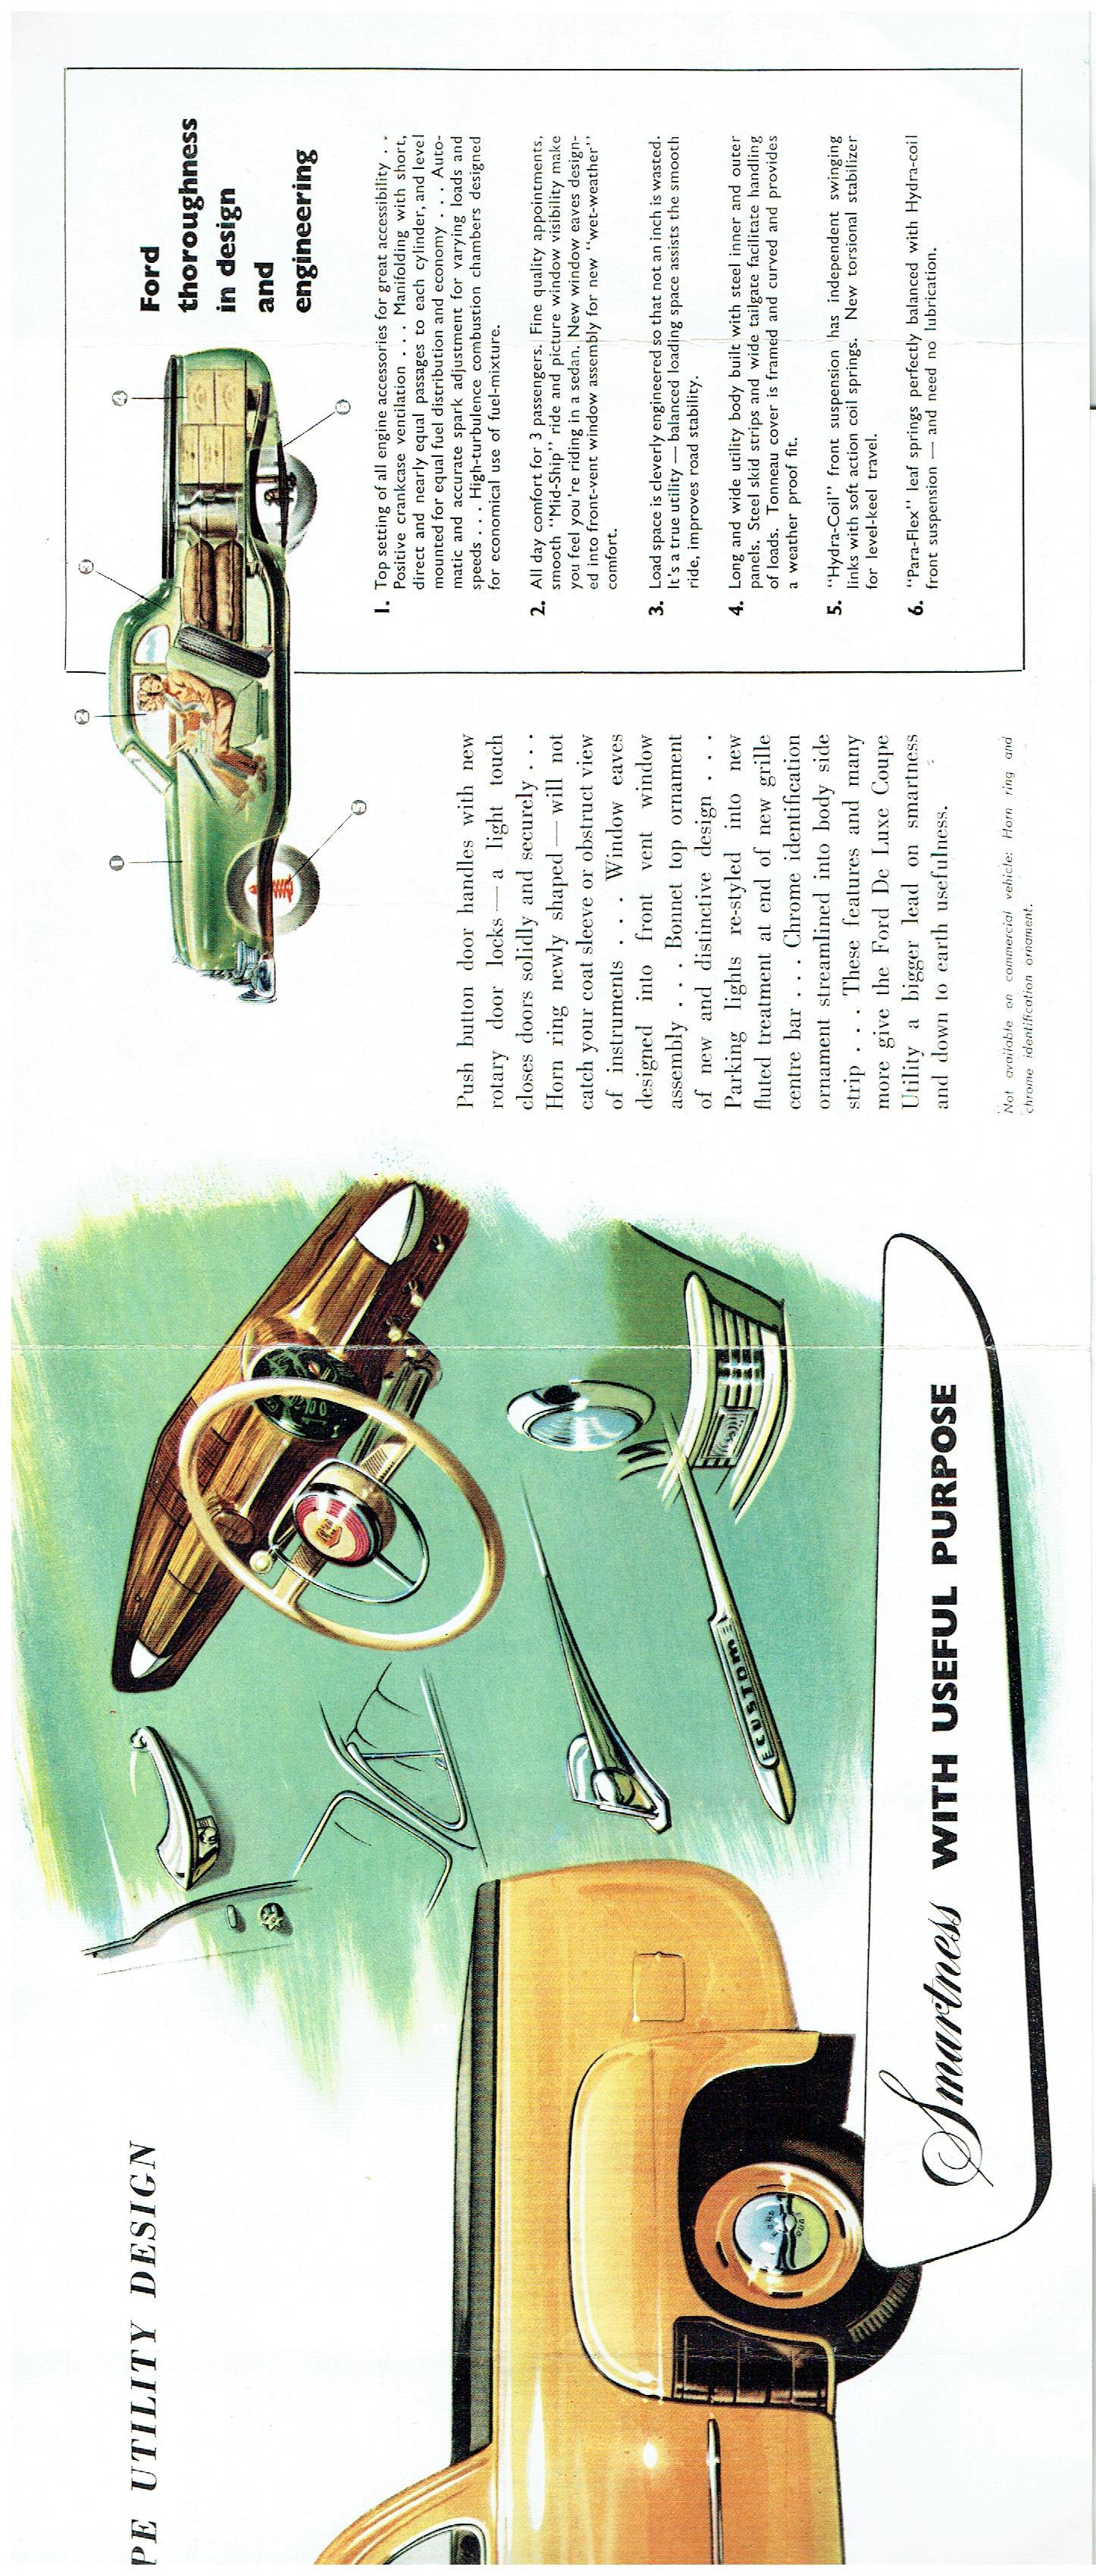 1950 Ford Deluxe Ute (3).jpg-2022-12-7 12.58.55